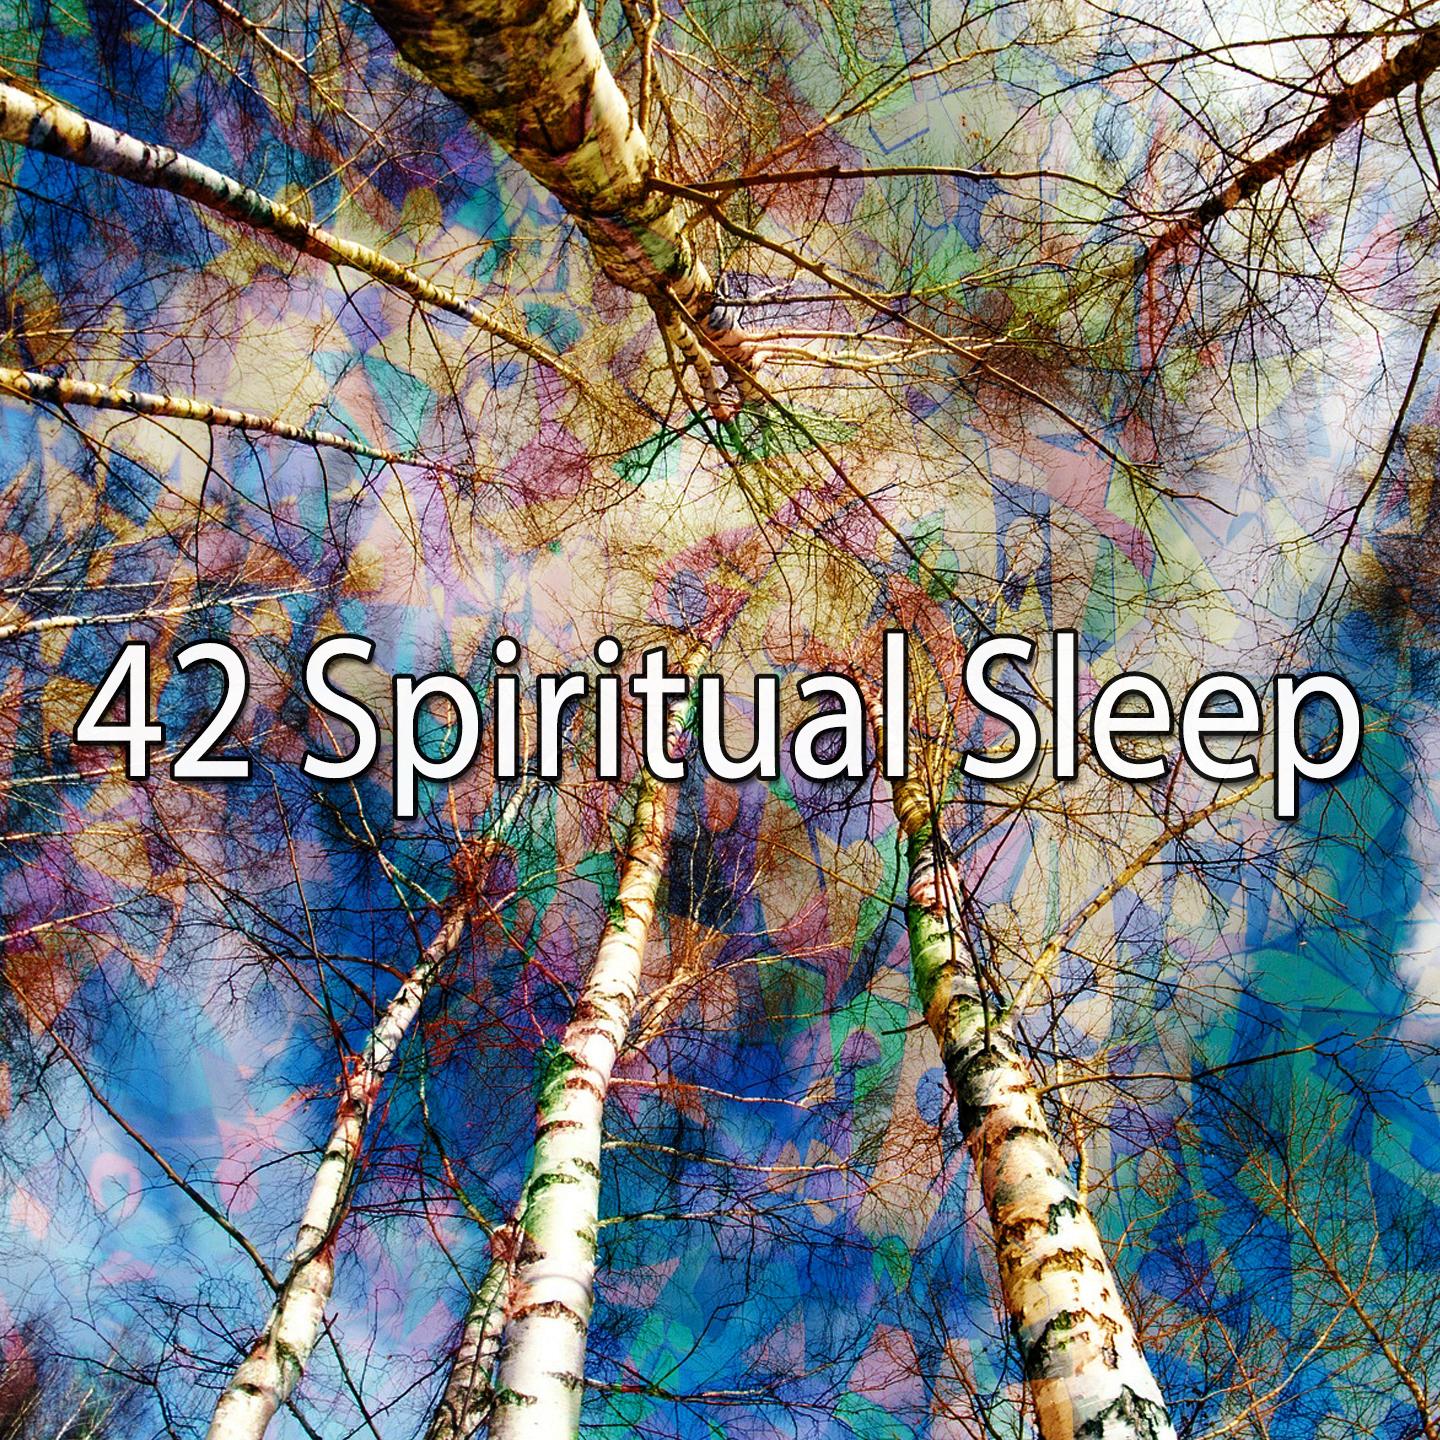 42 Spiritual Sleep